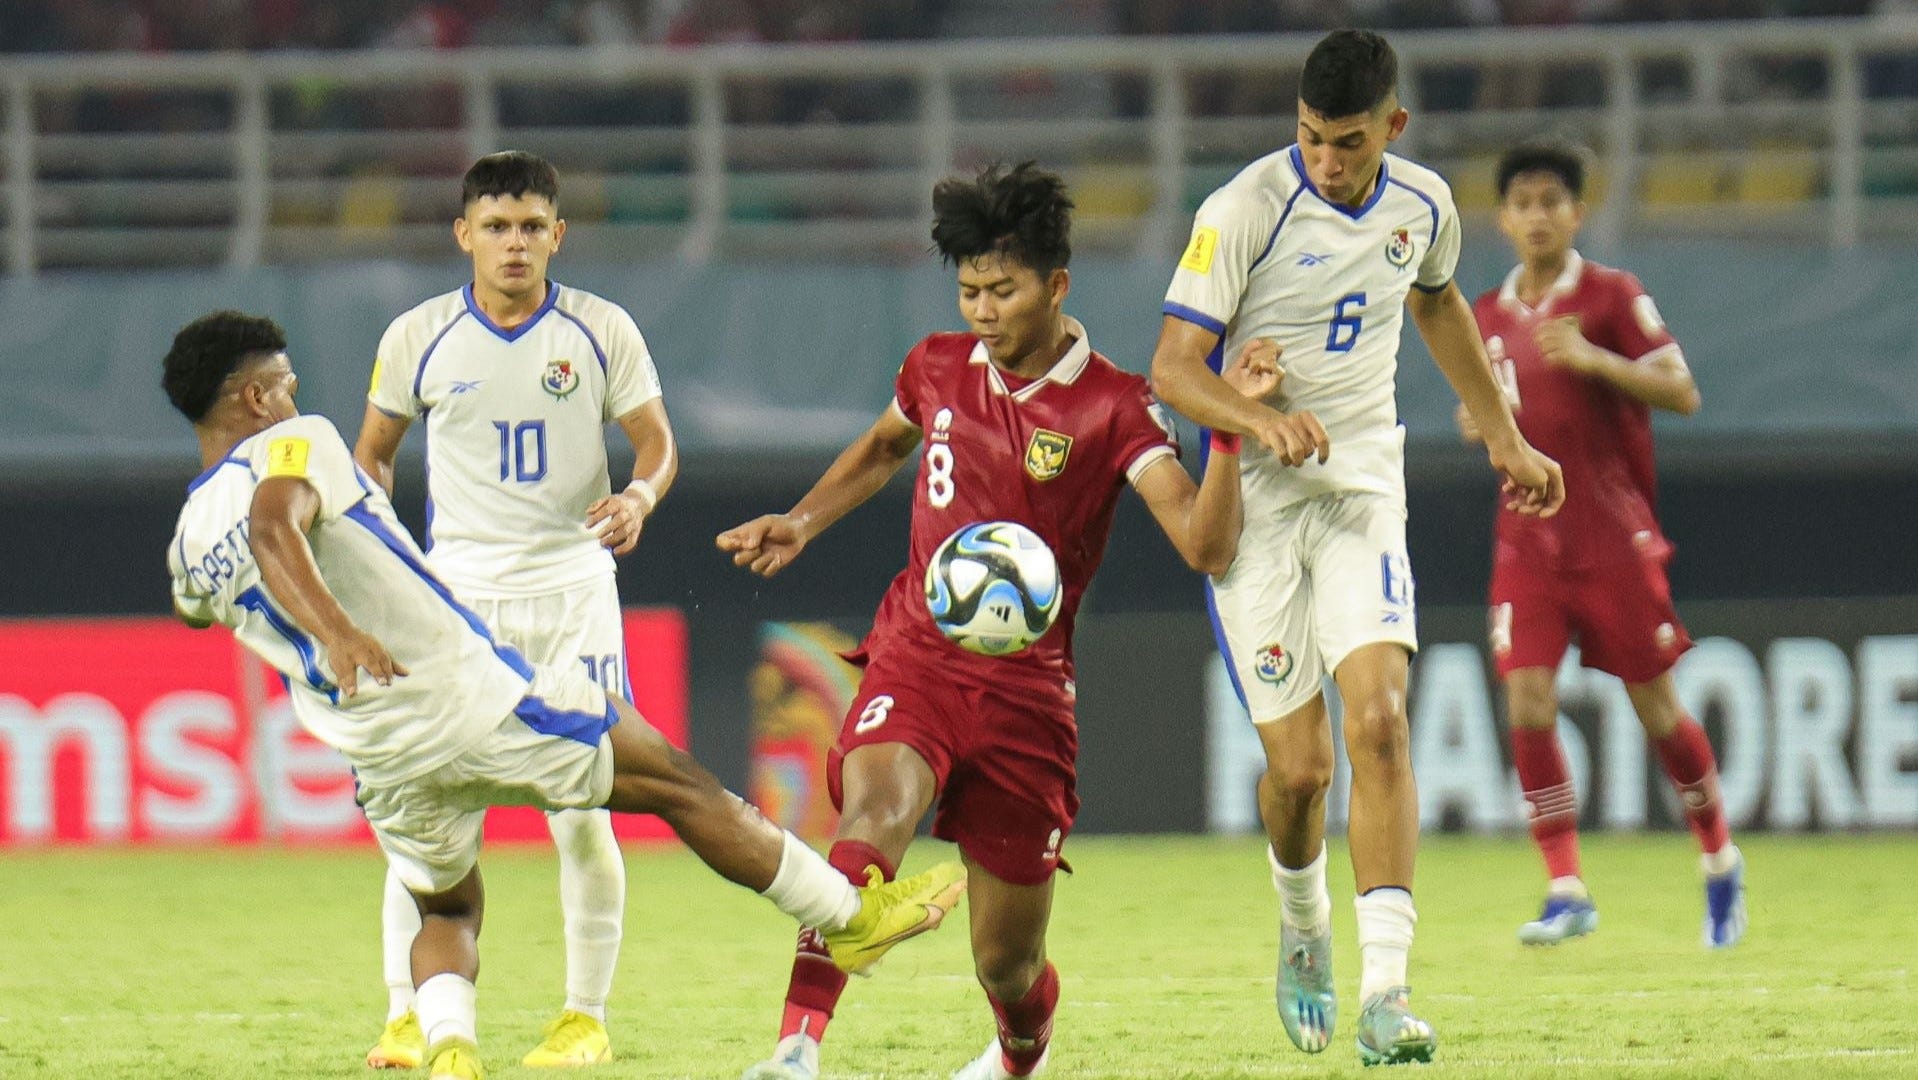 Daftar Top Skor Piala Dunia U-17 2023 Di Indonesia: Mamadou Doumbia, Arkhan Kaka, Dan Lainnya